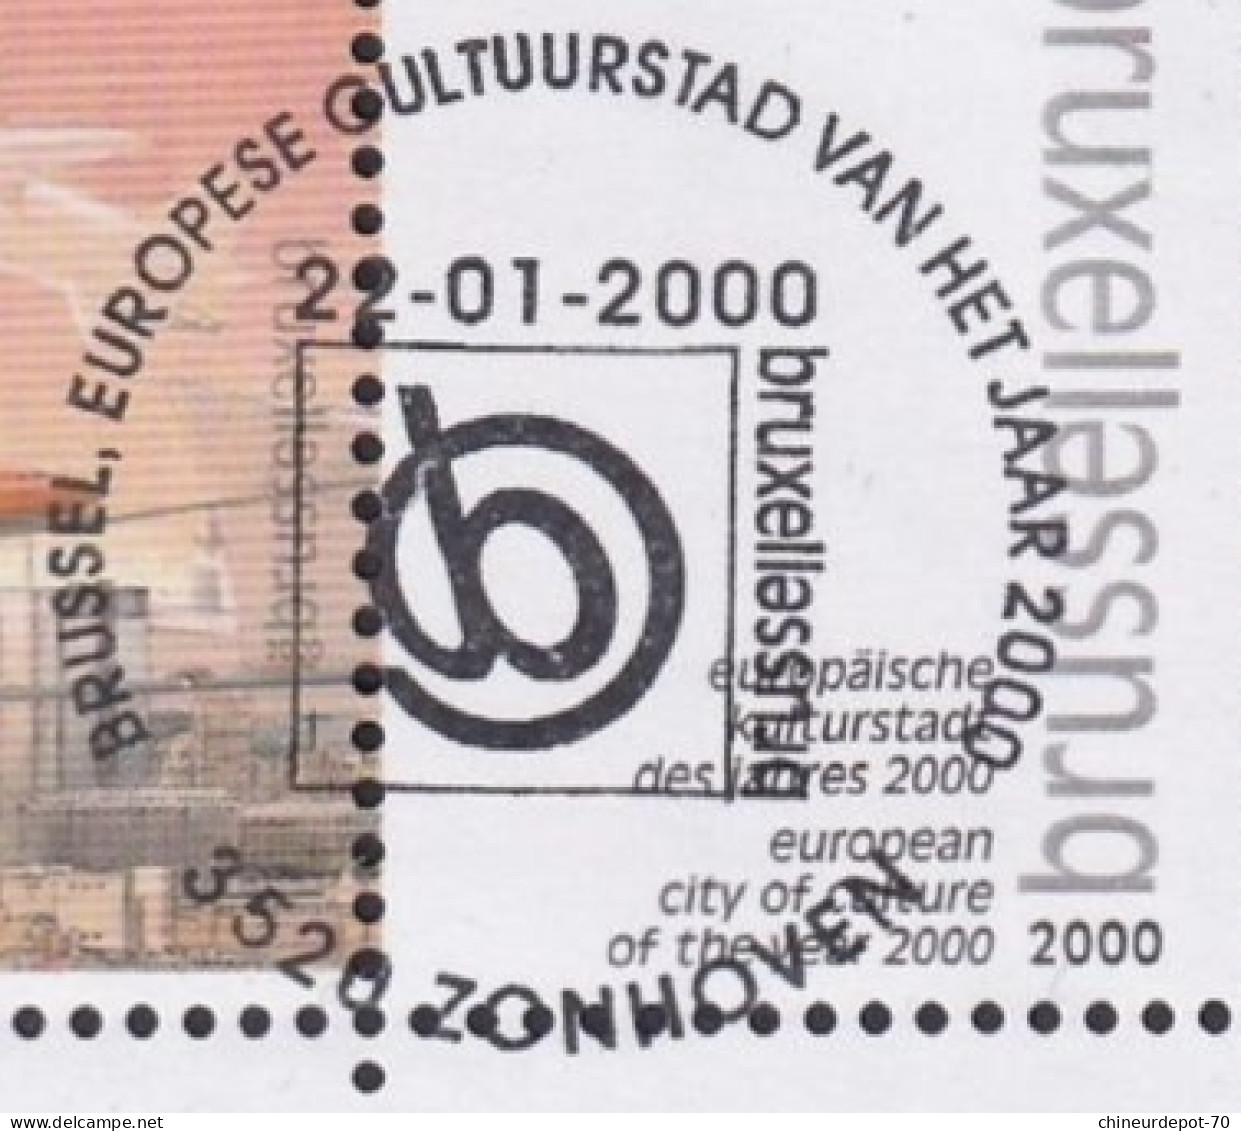 VILLE EUROPEENNE DE LA CULTURE DE L AN 2000 BORD DE FEUILLE CACHET ZONHOVEN - Dated Corners